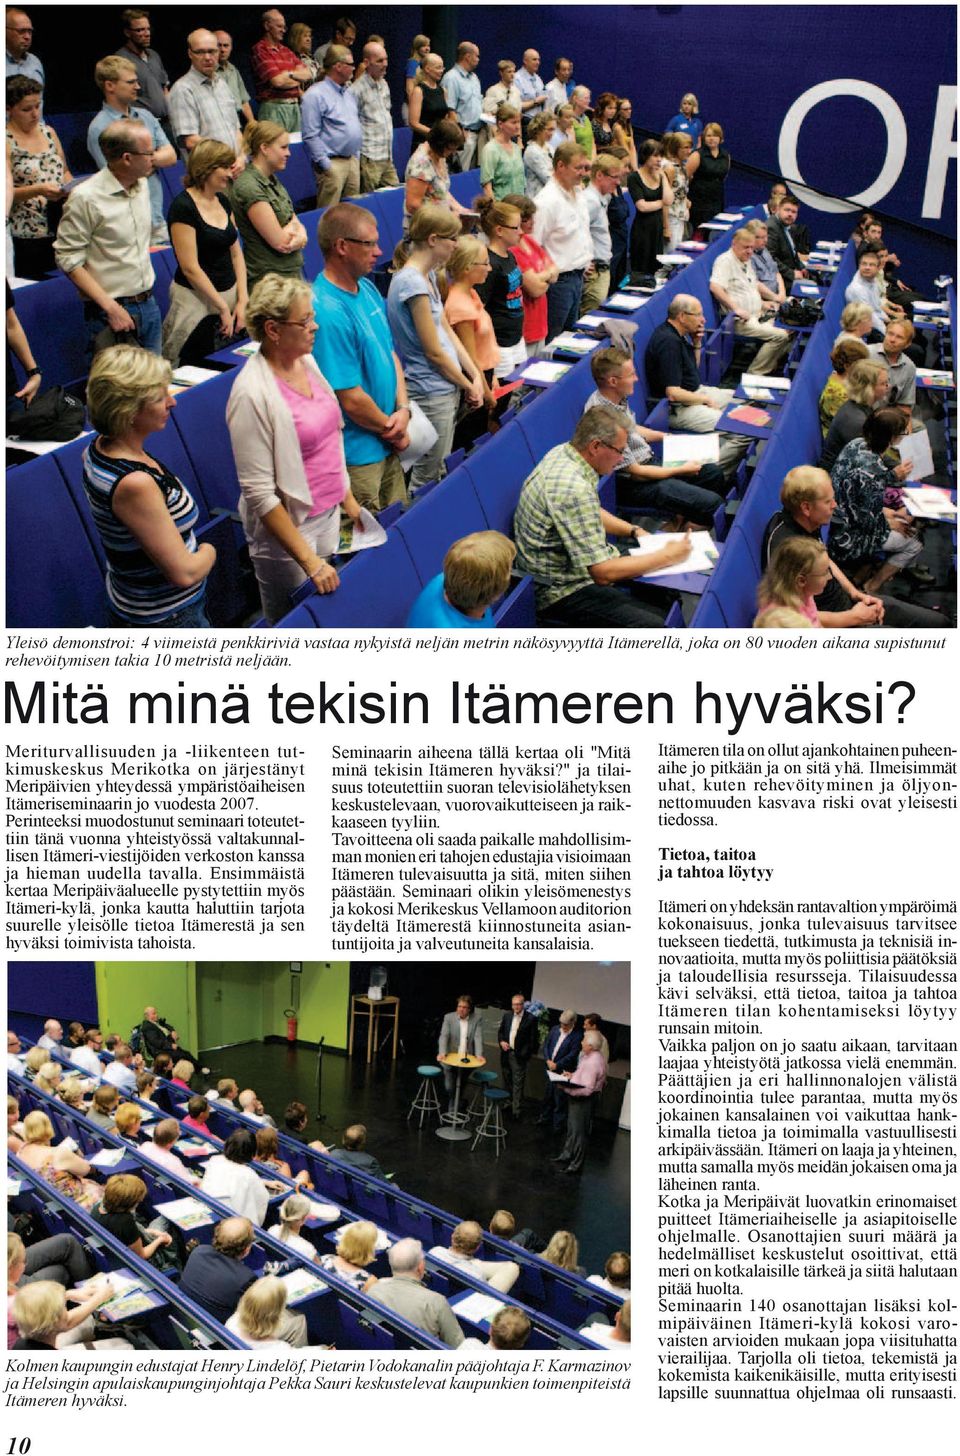 Perinteeksi muodostunut seminaari toteutettiin tänä vuonna yhteistyössä valtakunnallisen Itämeri-viestijöiden verkoston kanssa ja hieman uudella tavalla.